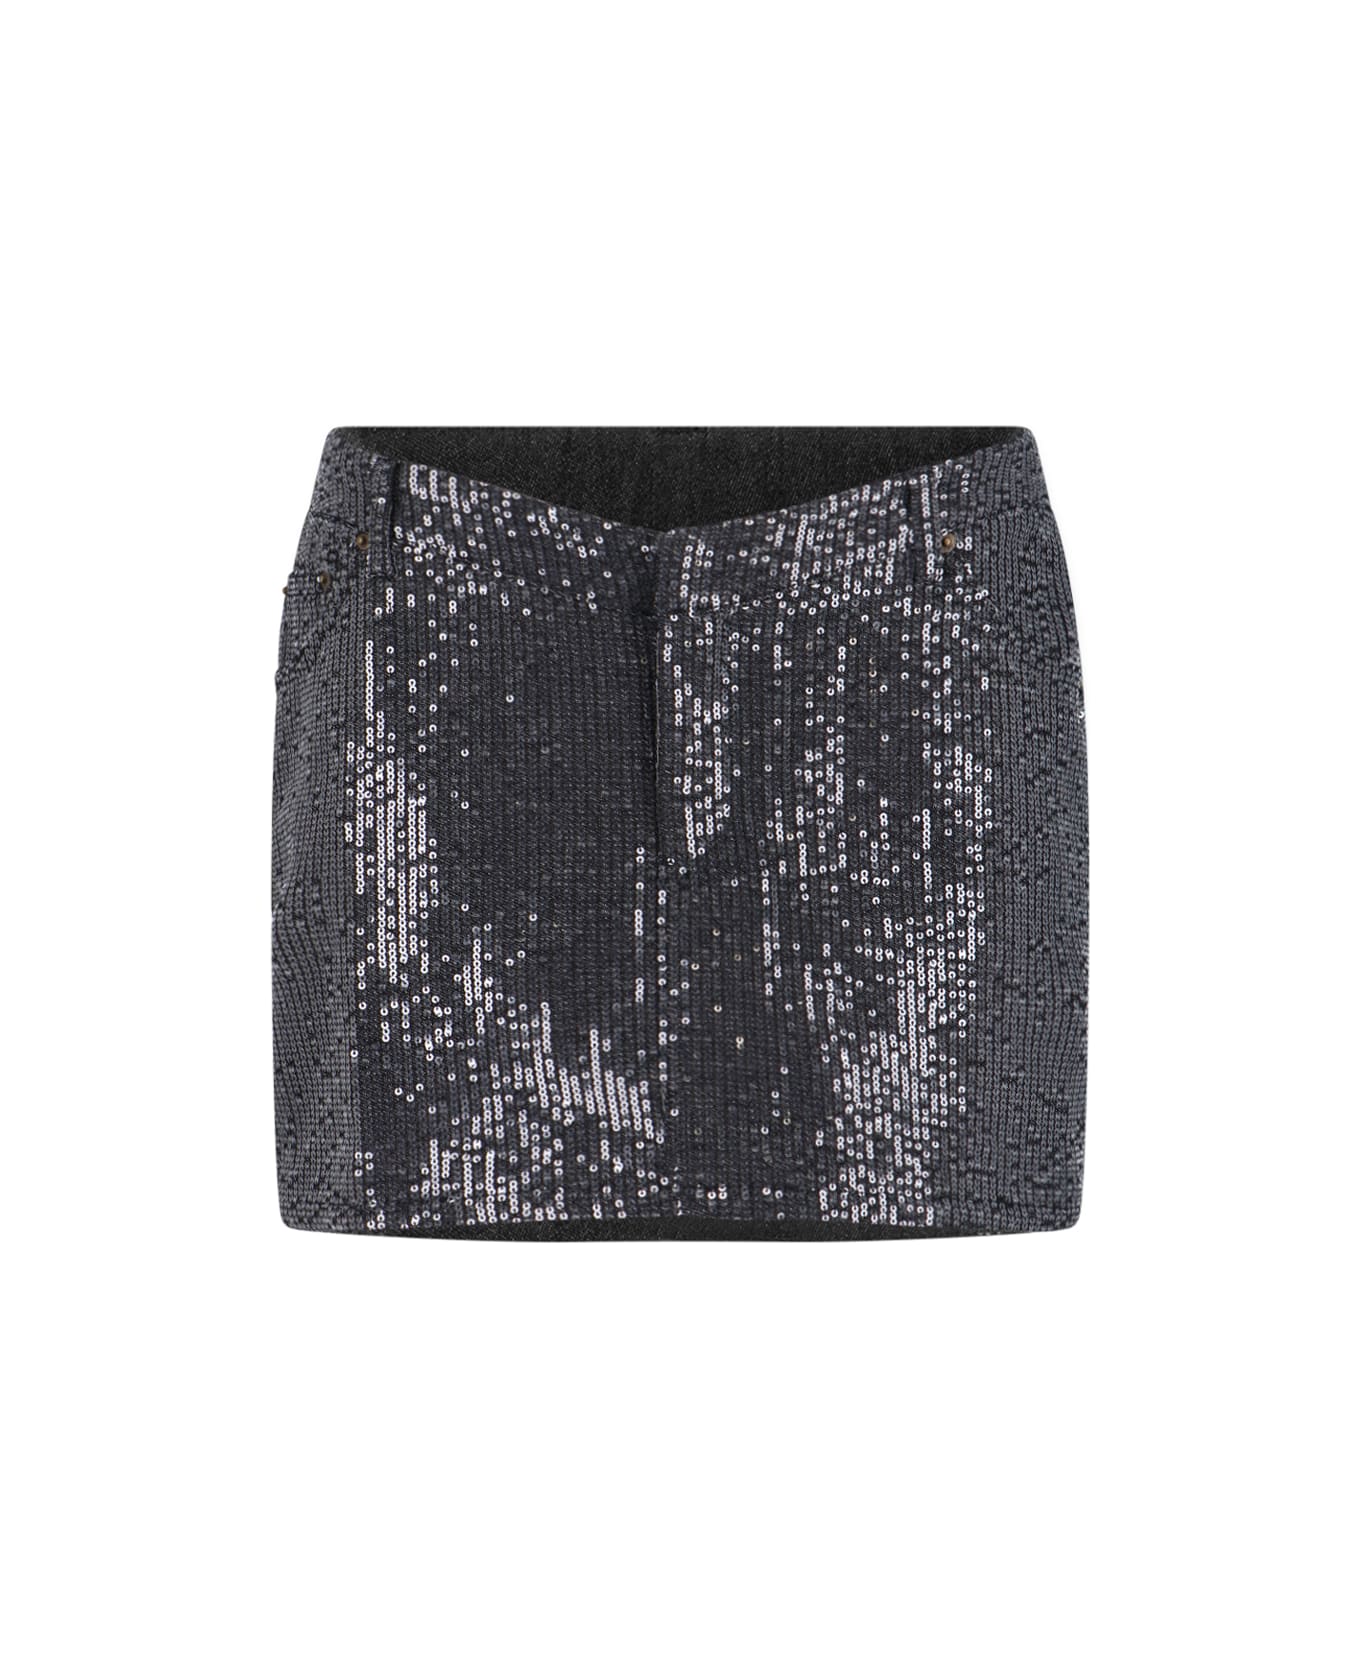 Rotate by Birger Christensen Sequin Mini Skirt - Black  